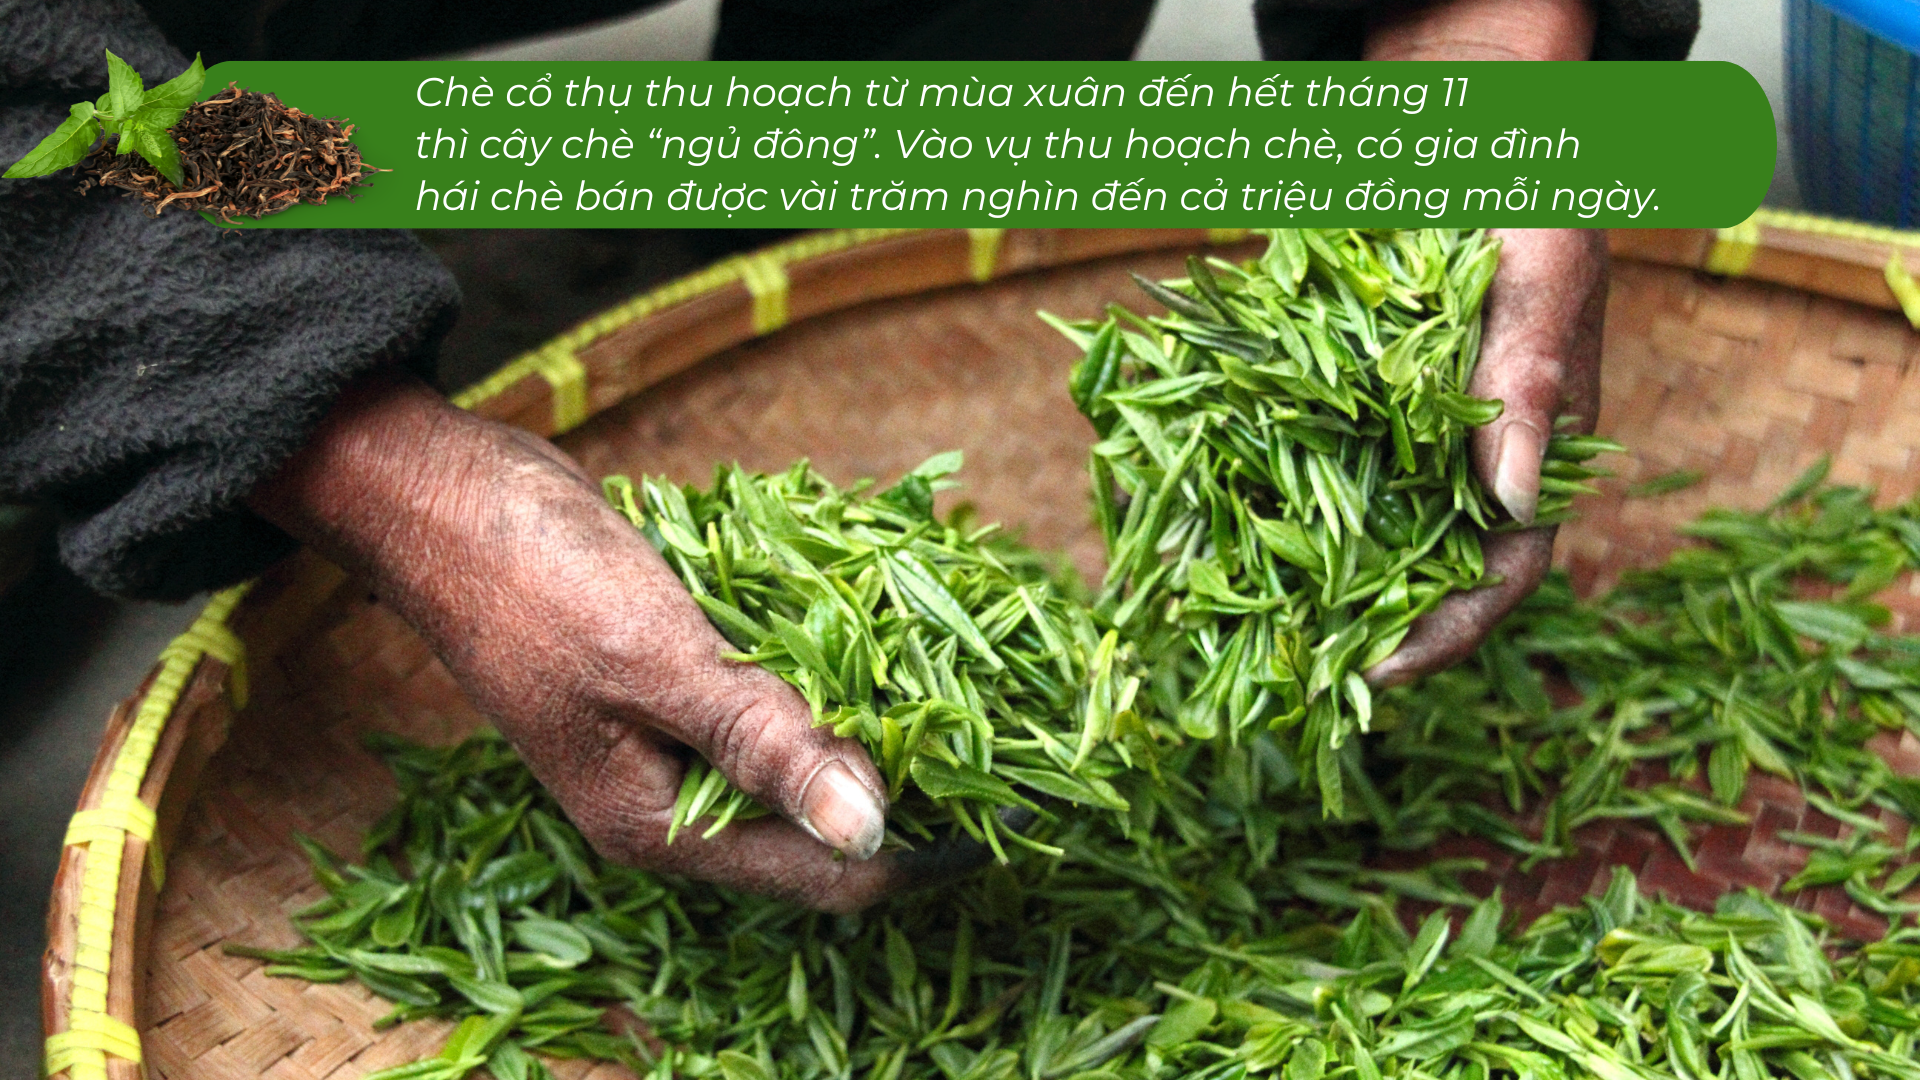 Lào Cai có một 'kho vàng xanh', mùi thơm như mật ong, hễ bán là hết sạch, giá 1,5 triệu đồng/kg - Ảnh 6.